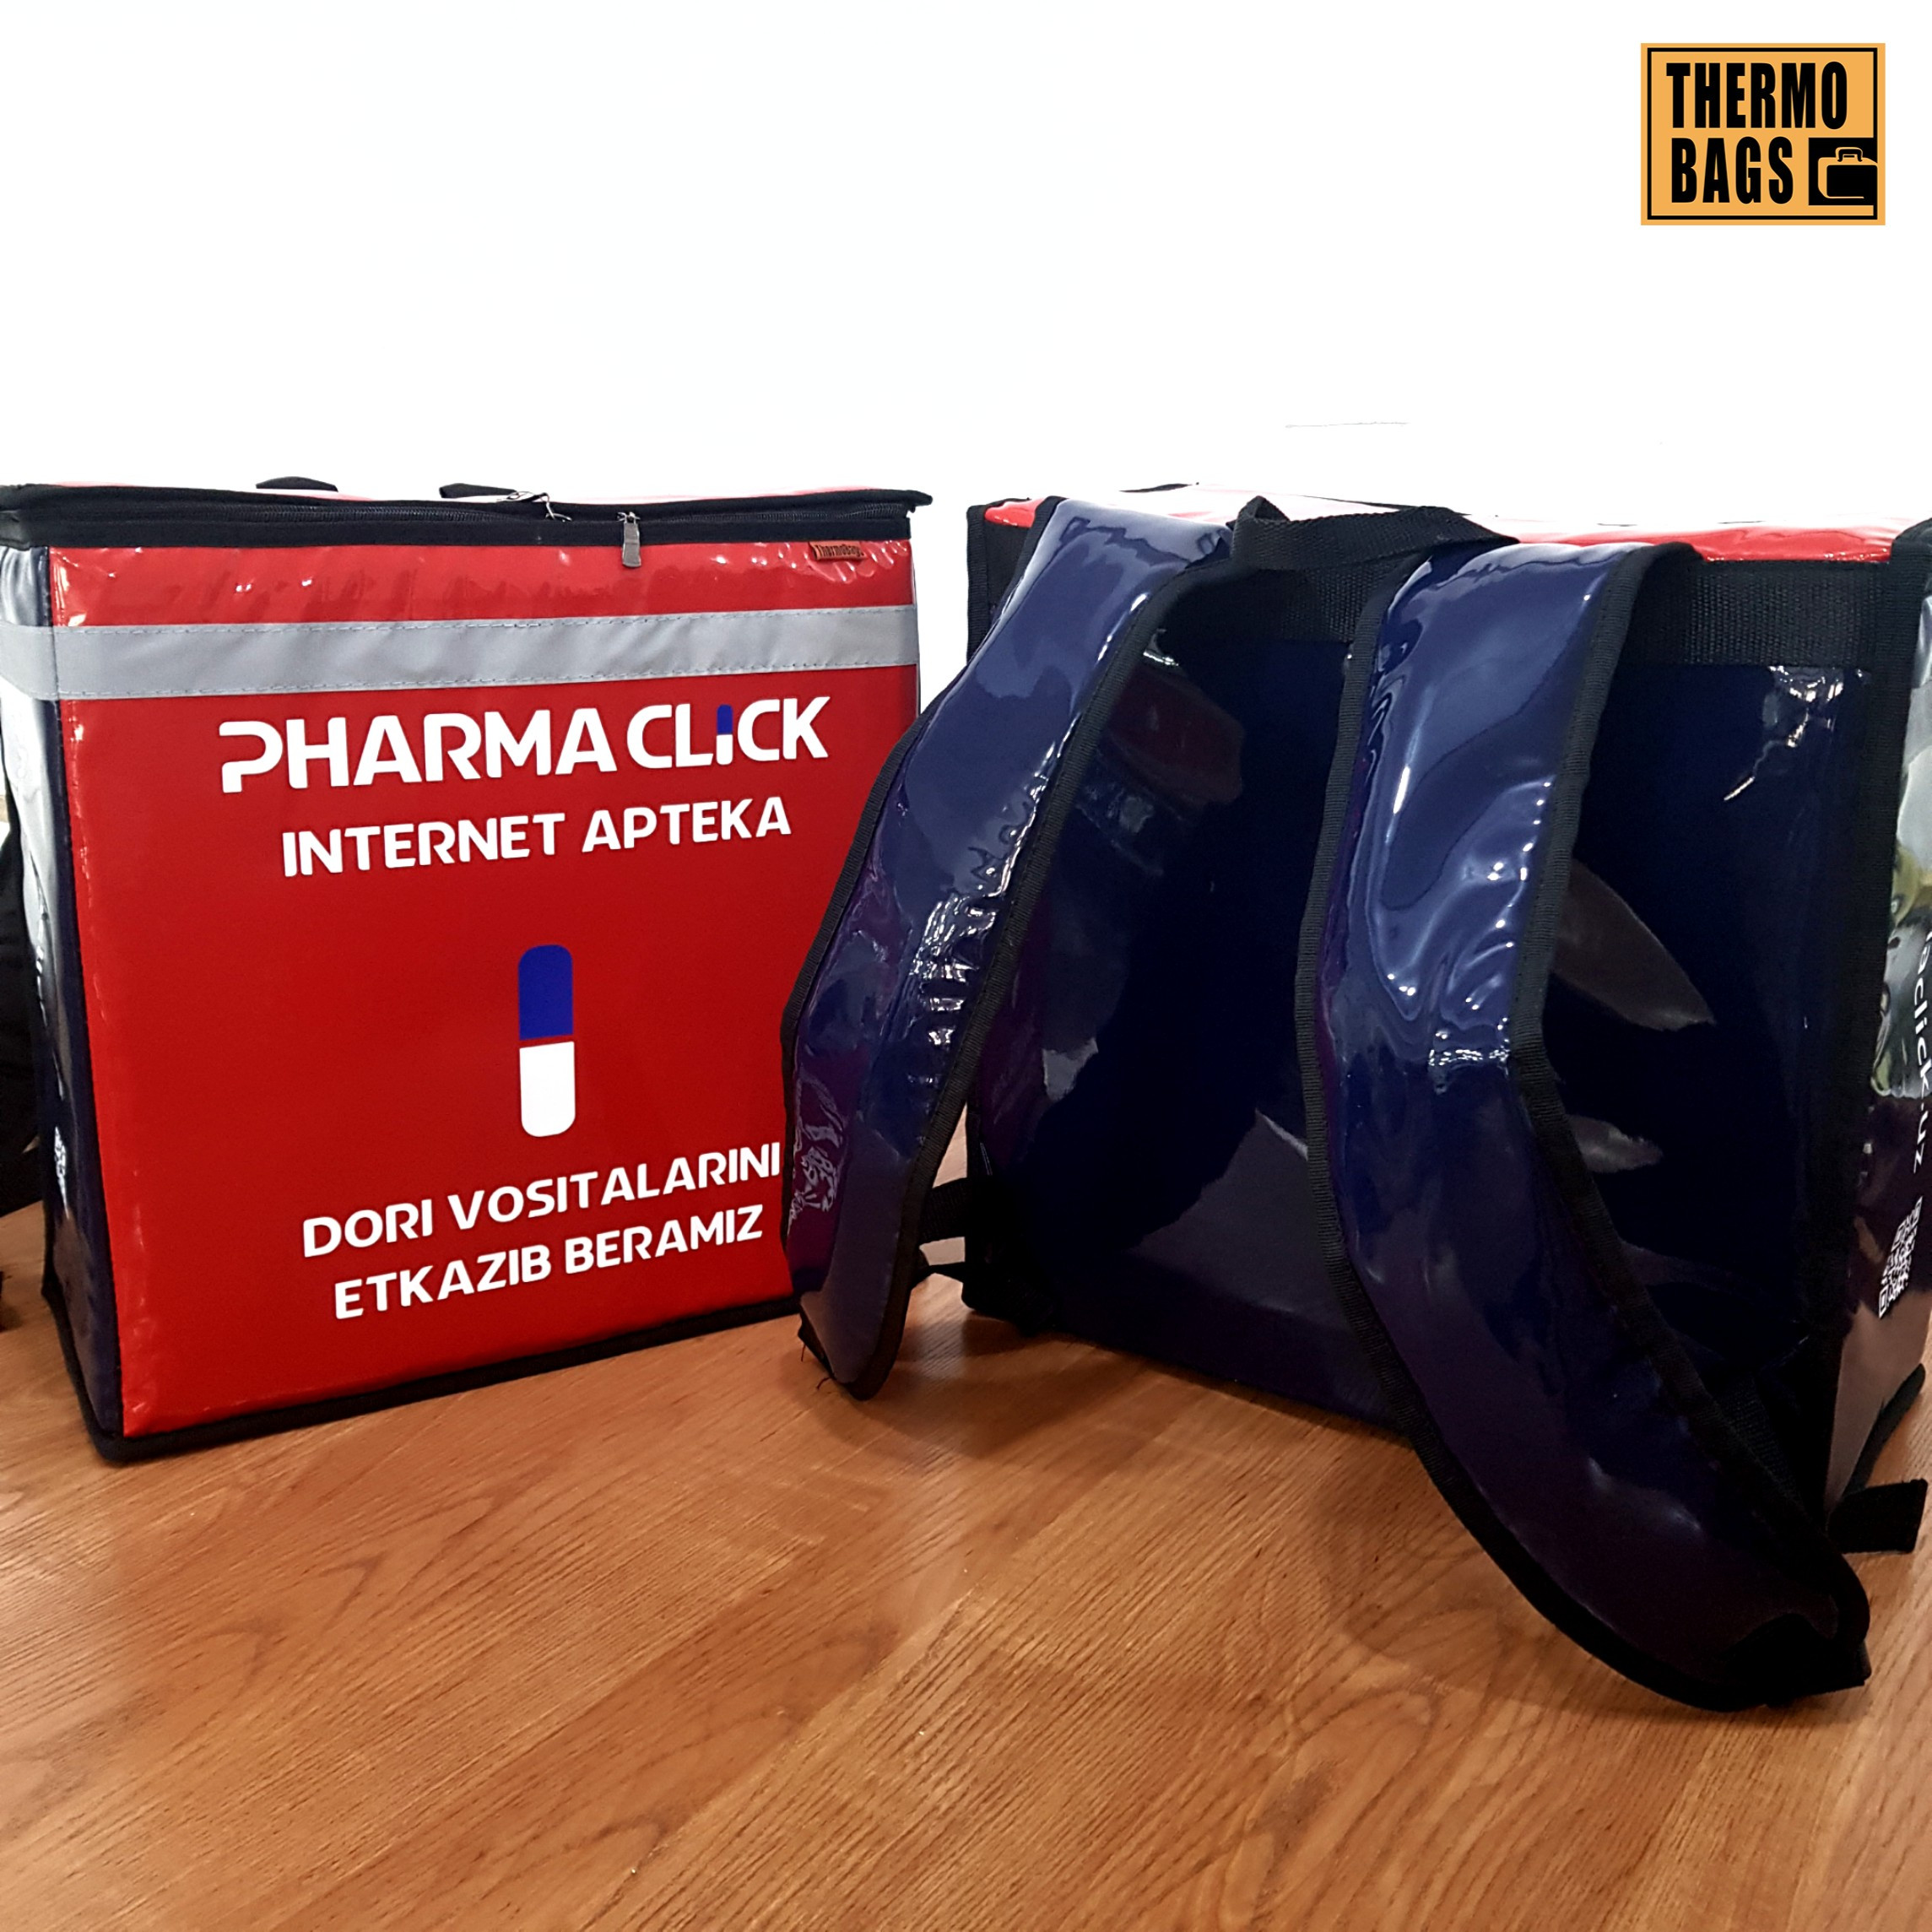 Термо рюкзак для доставки лекарств